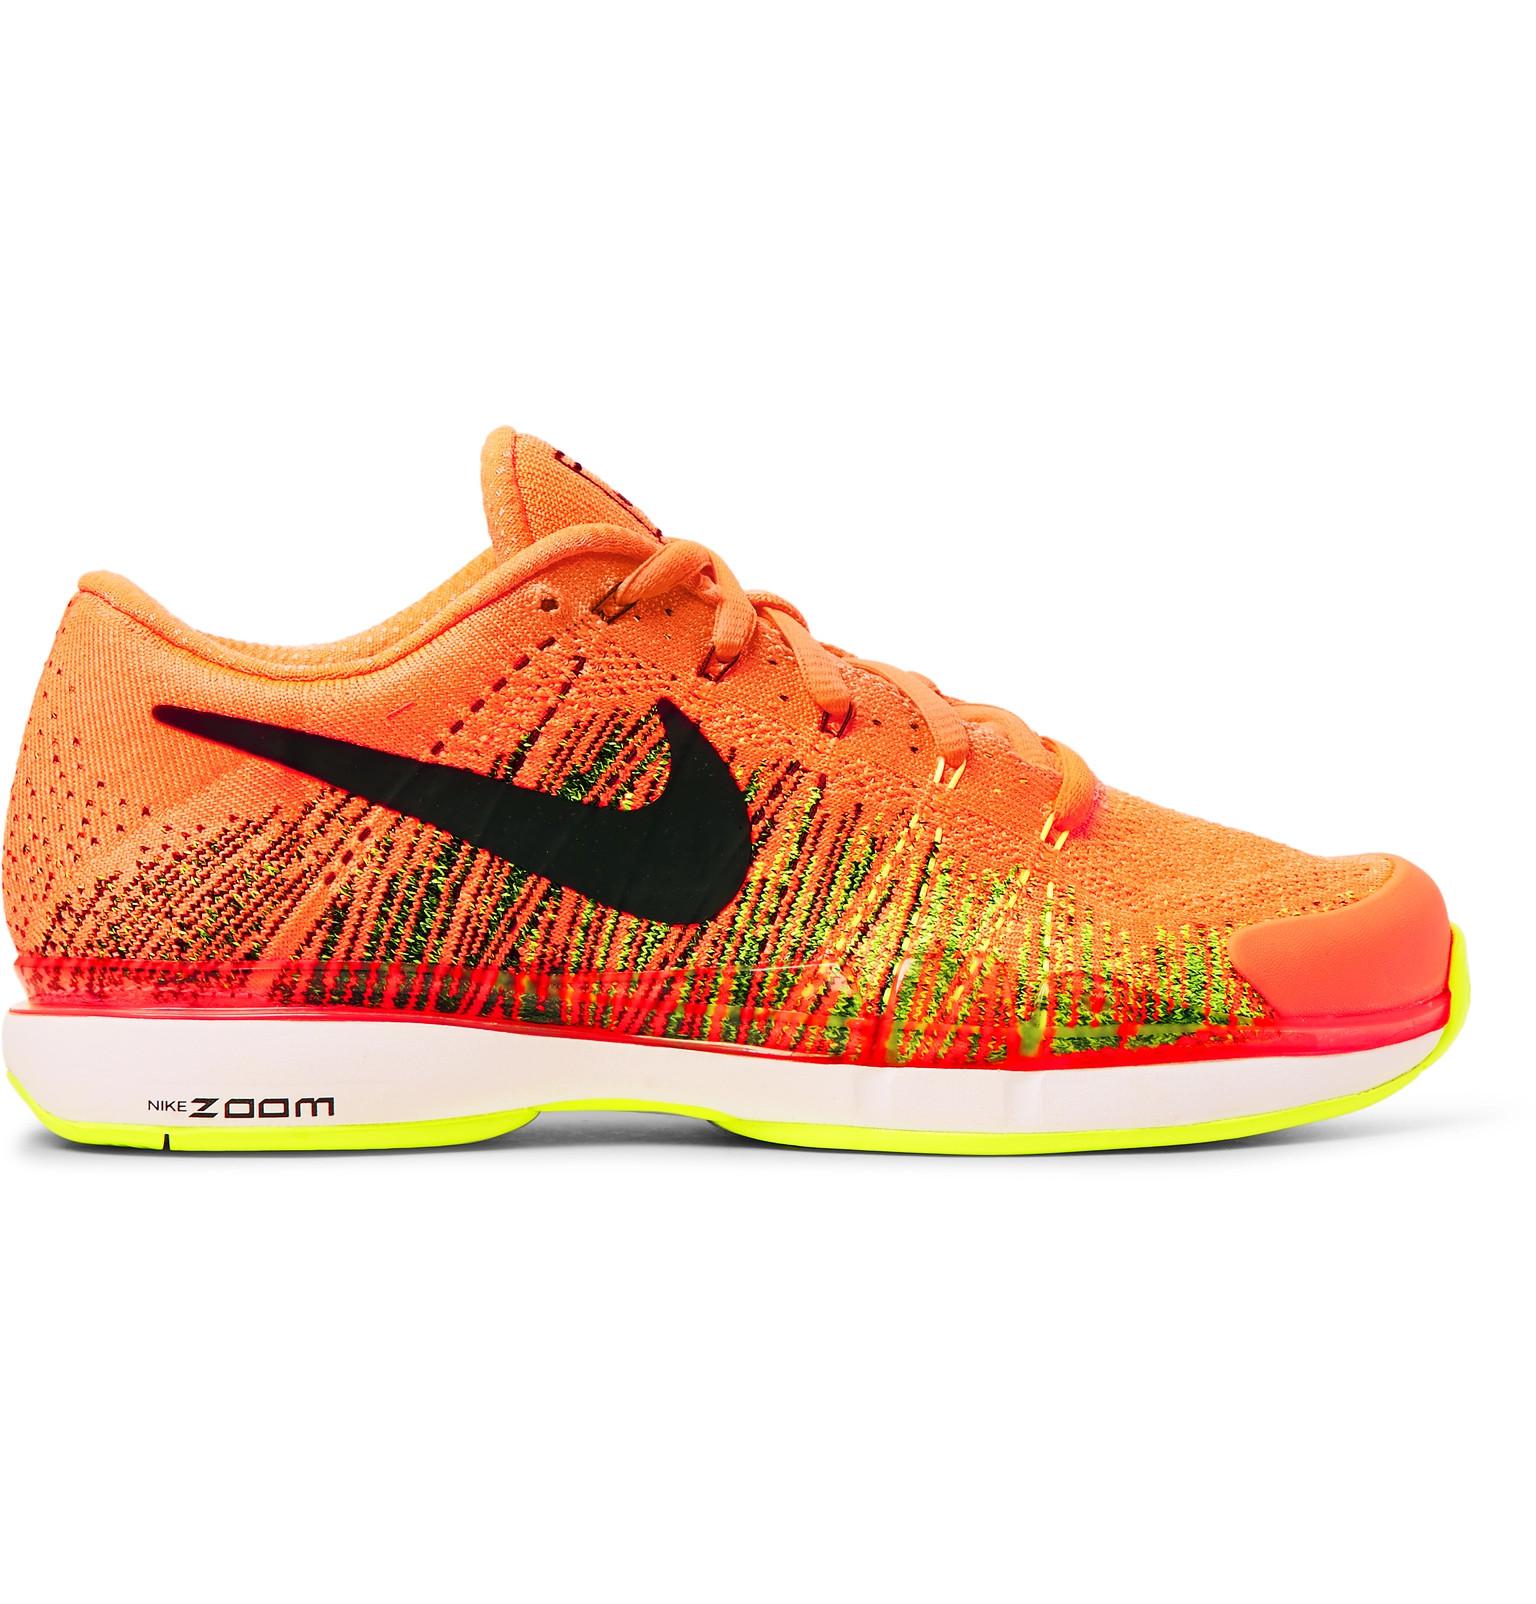 Nike Rubber Zoom Vapor Flyknit Tennis Sneakers in Bright Orange (Orange)  for Men - Lyst